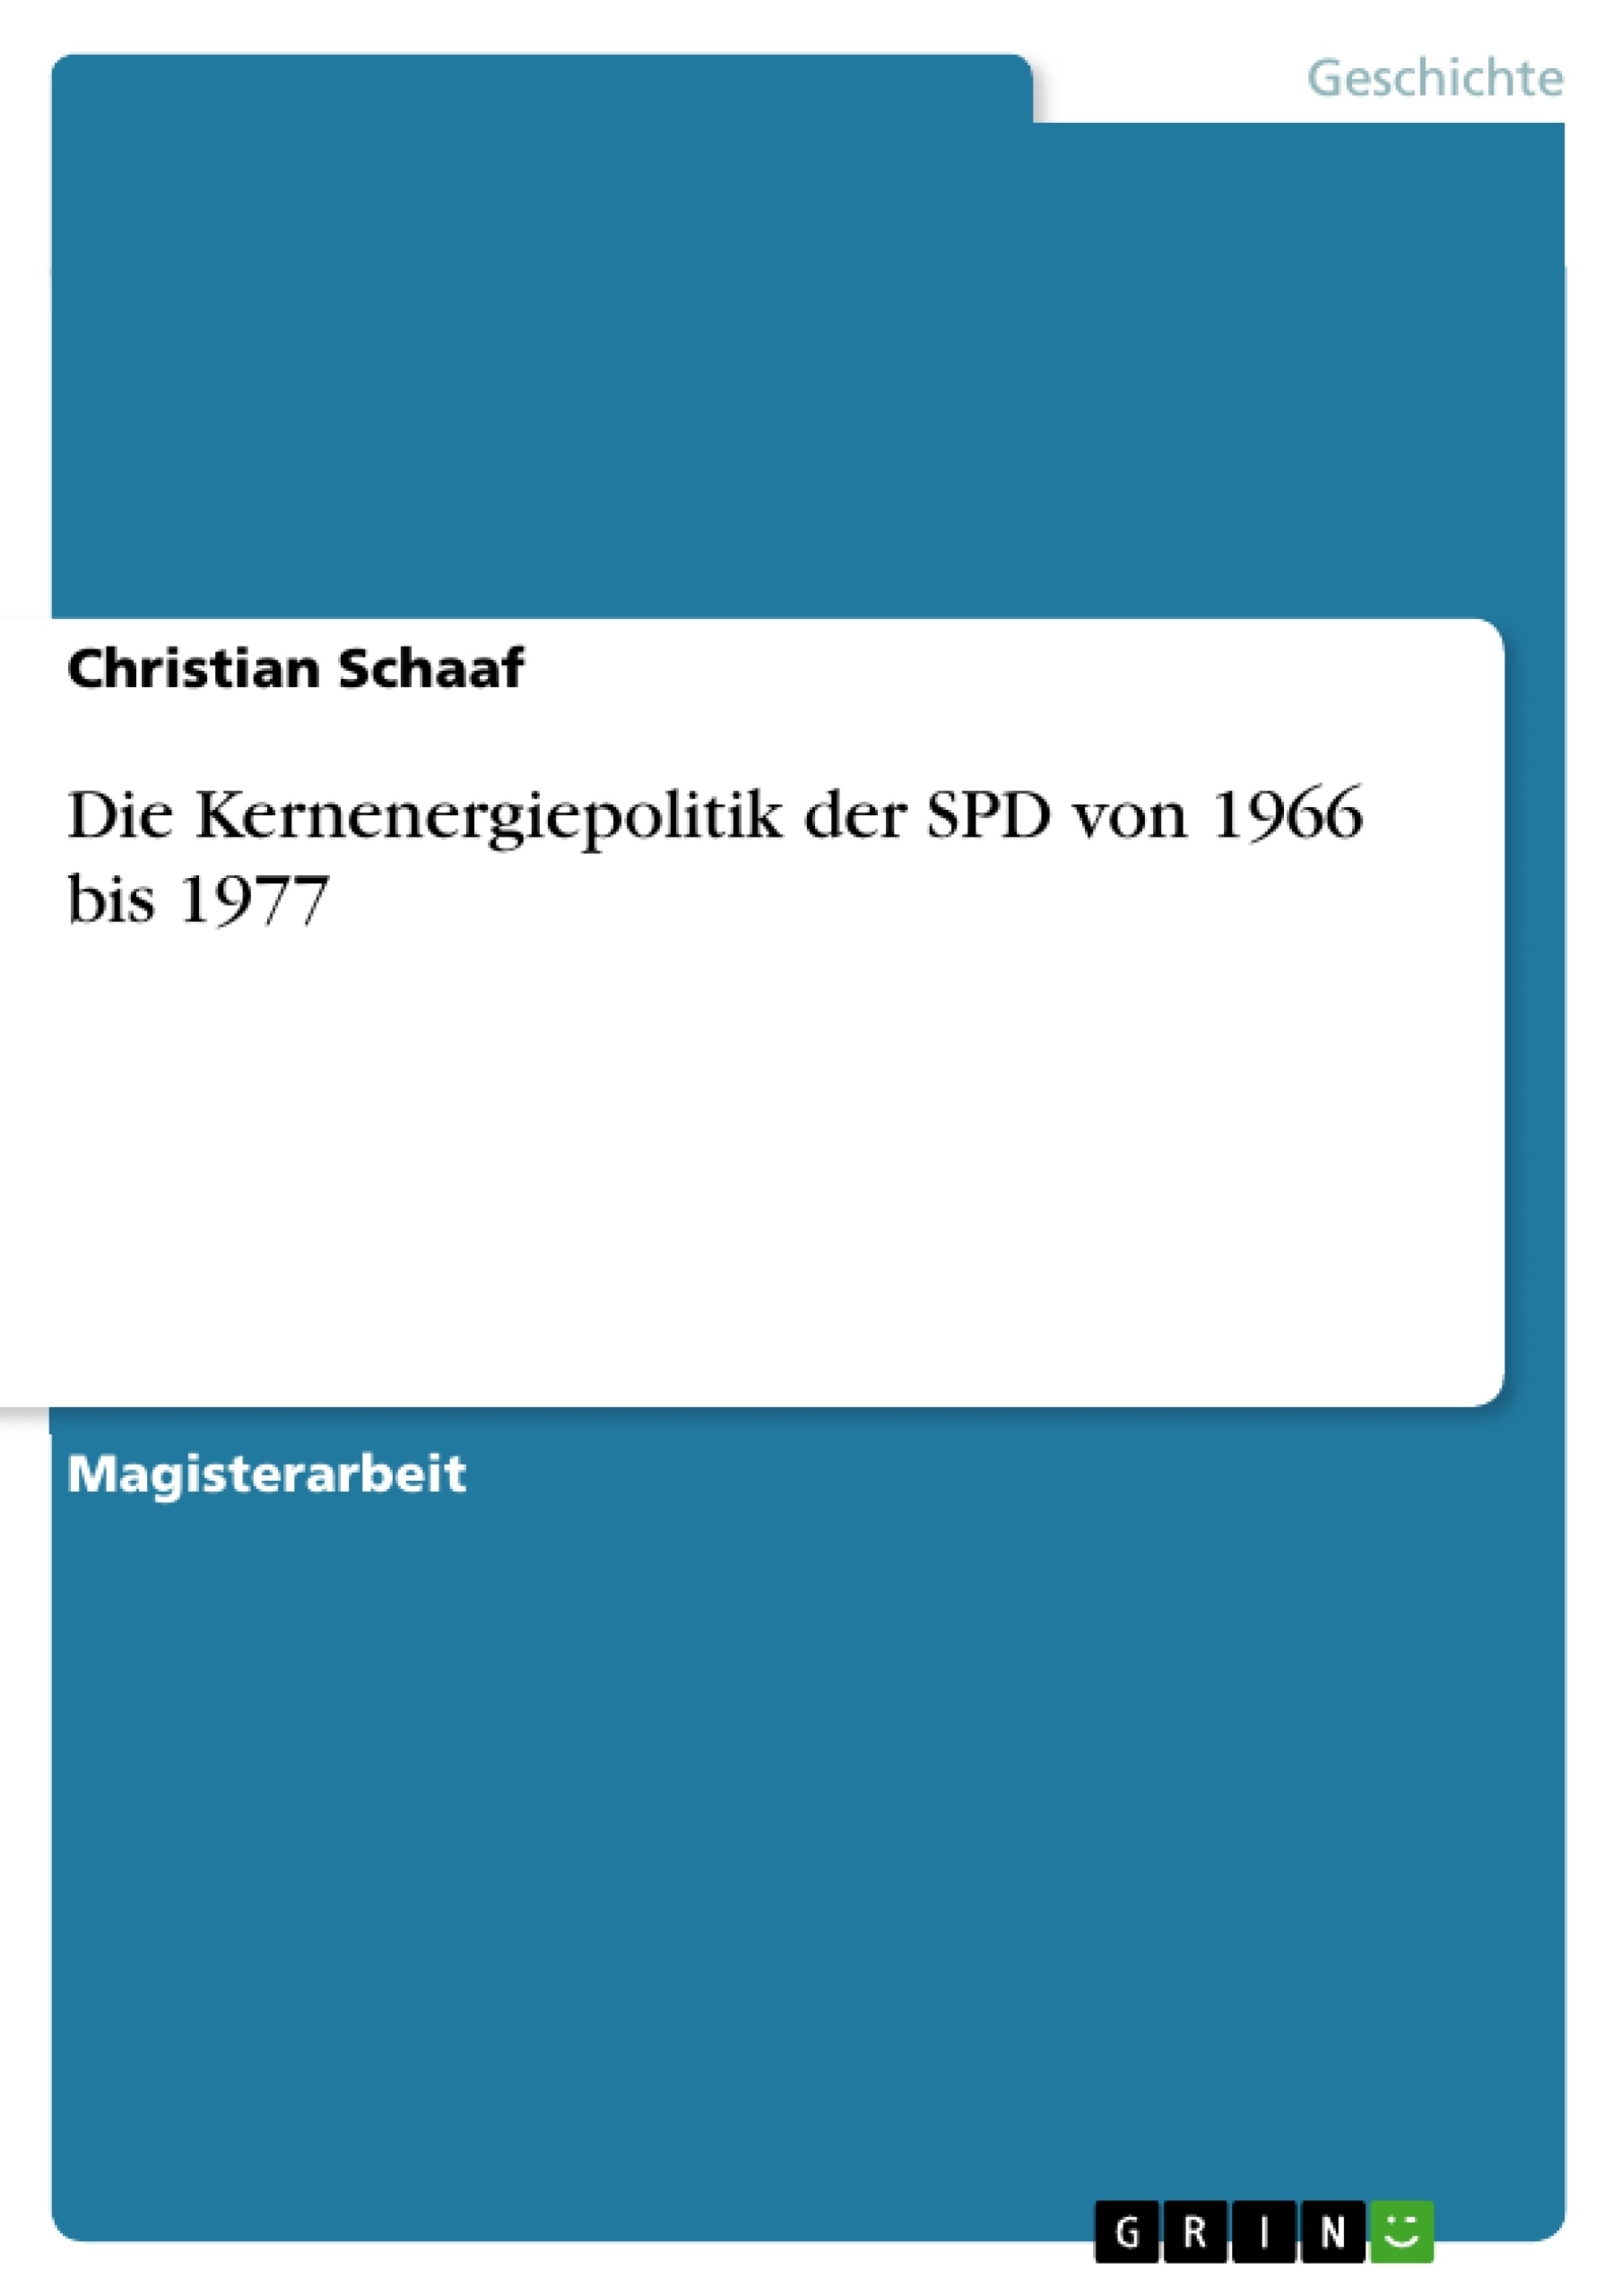 Title: Die Kernenergiepolitik der SPD von 1966 bis 1977